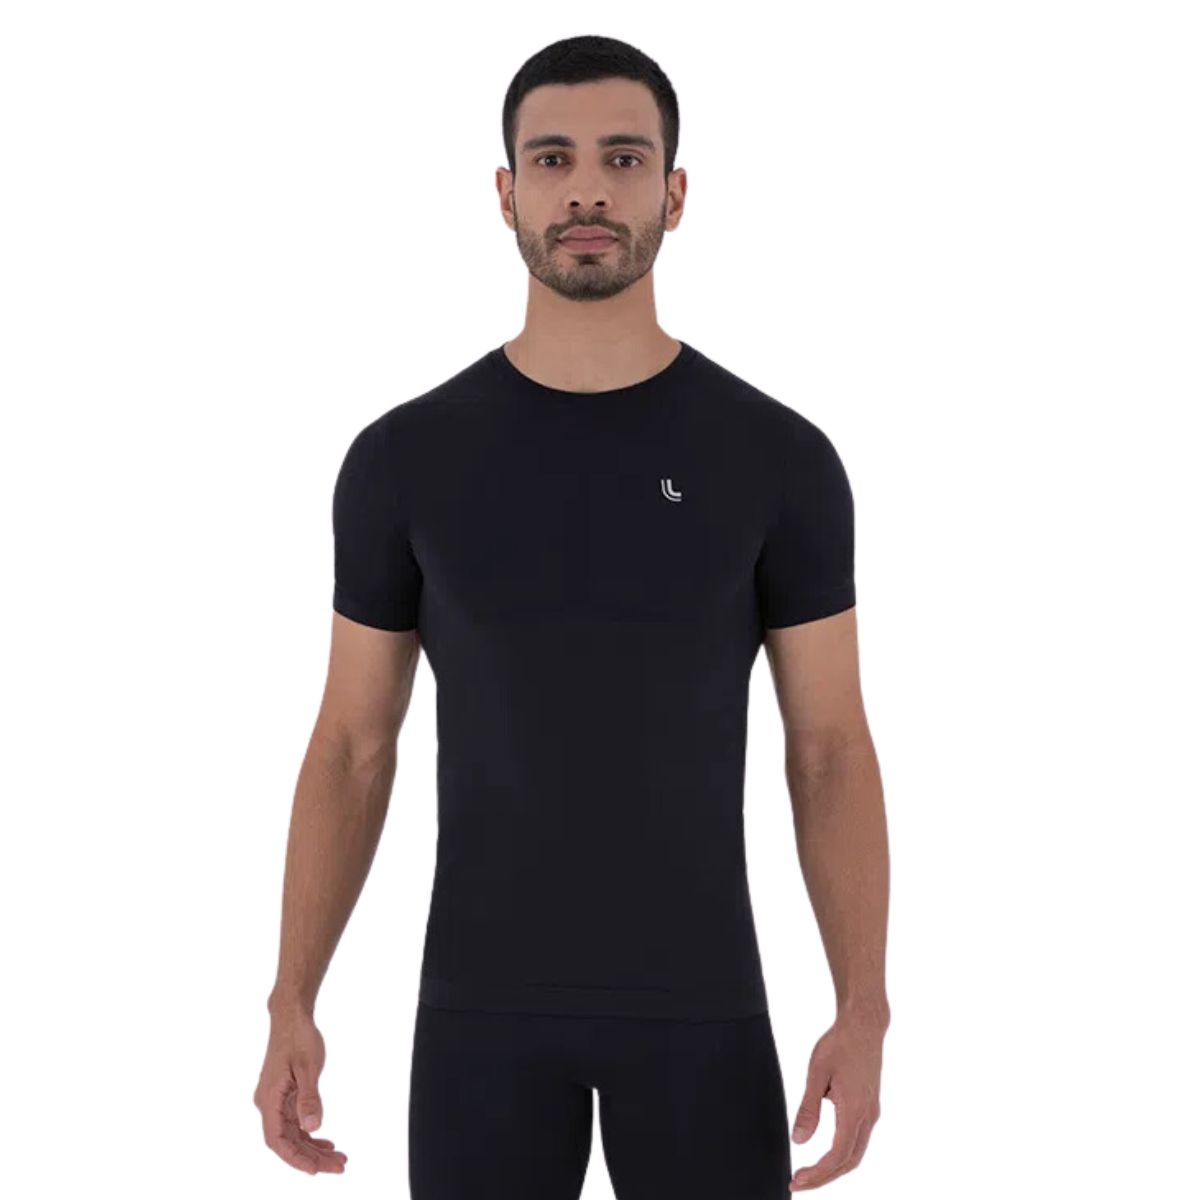 Camiseta Lupo Masculina Fitness para Musculação Térmica Lupo i power Lupo